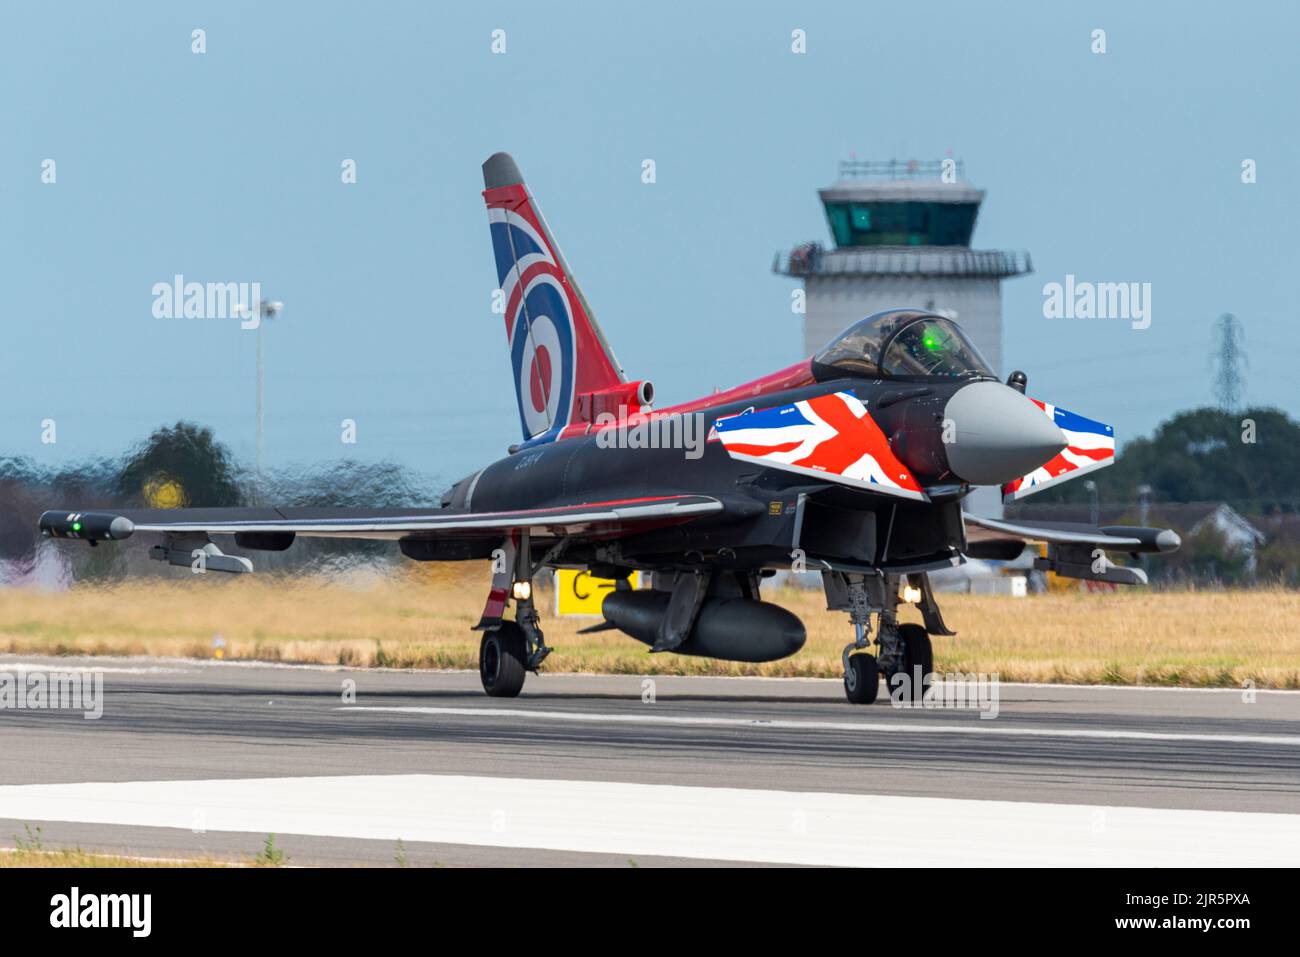 L'avion de chasse à réaction RAF Eurofighter Typhoon à l'aéroport Southend de Londres tout en l'utilisant comme base pour exposer à Eastbourne Airshow. Schéma britannique Banque D'Images